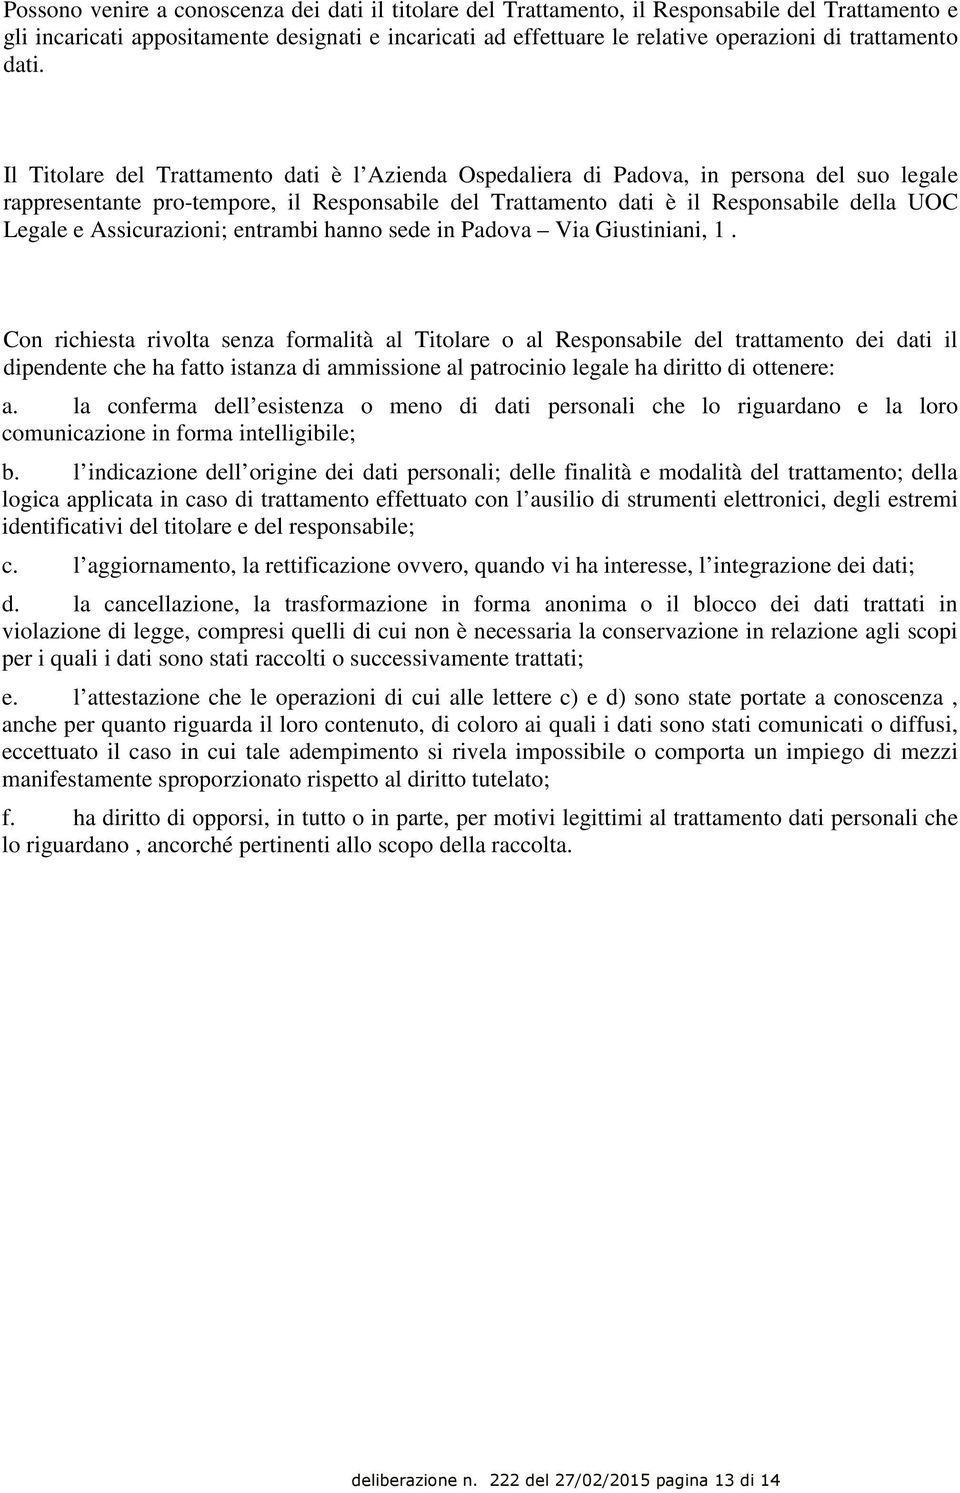 Il Titolare del Trattamento dati è l Azienda Ospedaliera di Padova, in persona del suo legale rappresentante pro-tempore, il Responsabile del Trattamento dati è il Responsabile della UOC Legale e